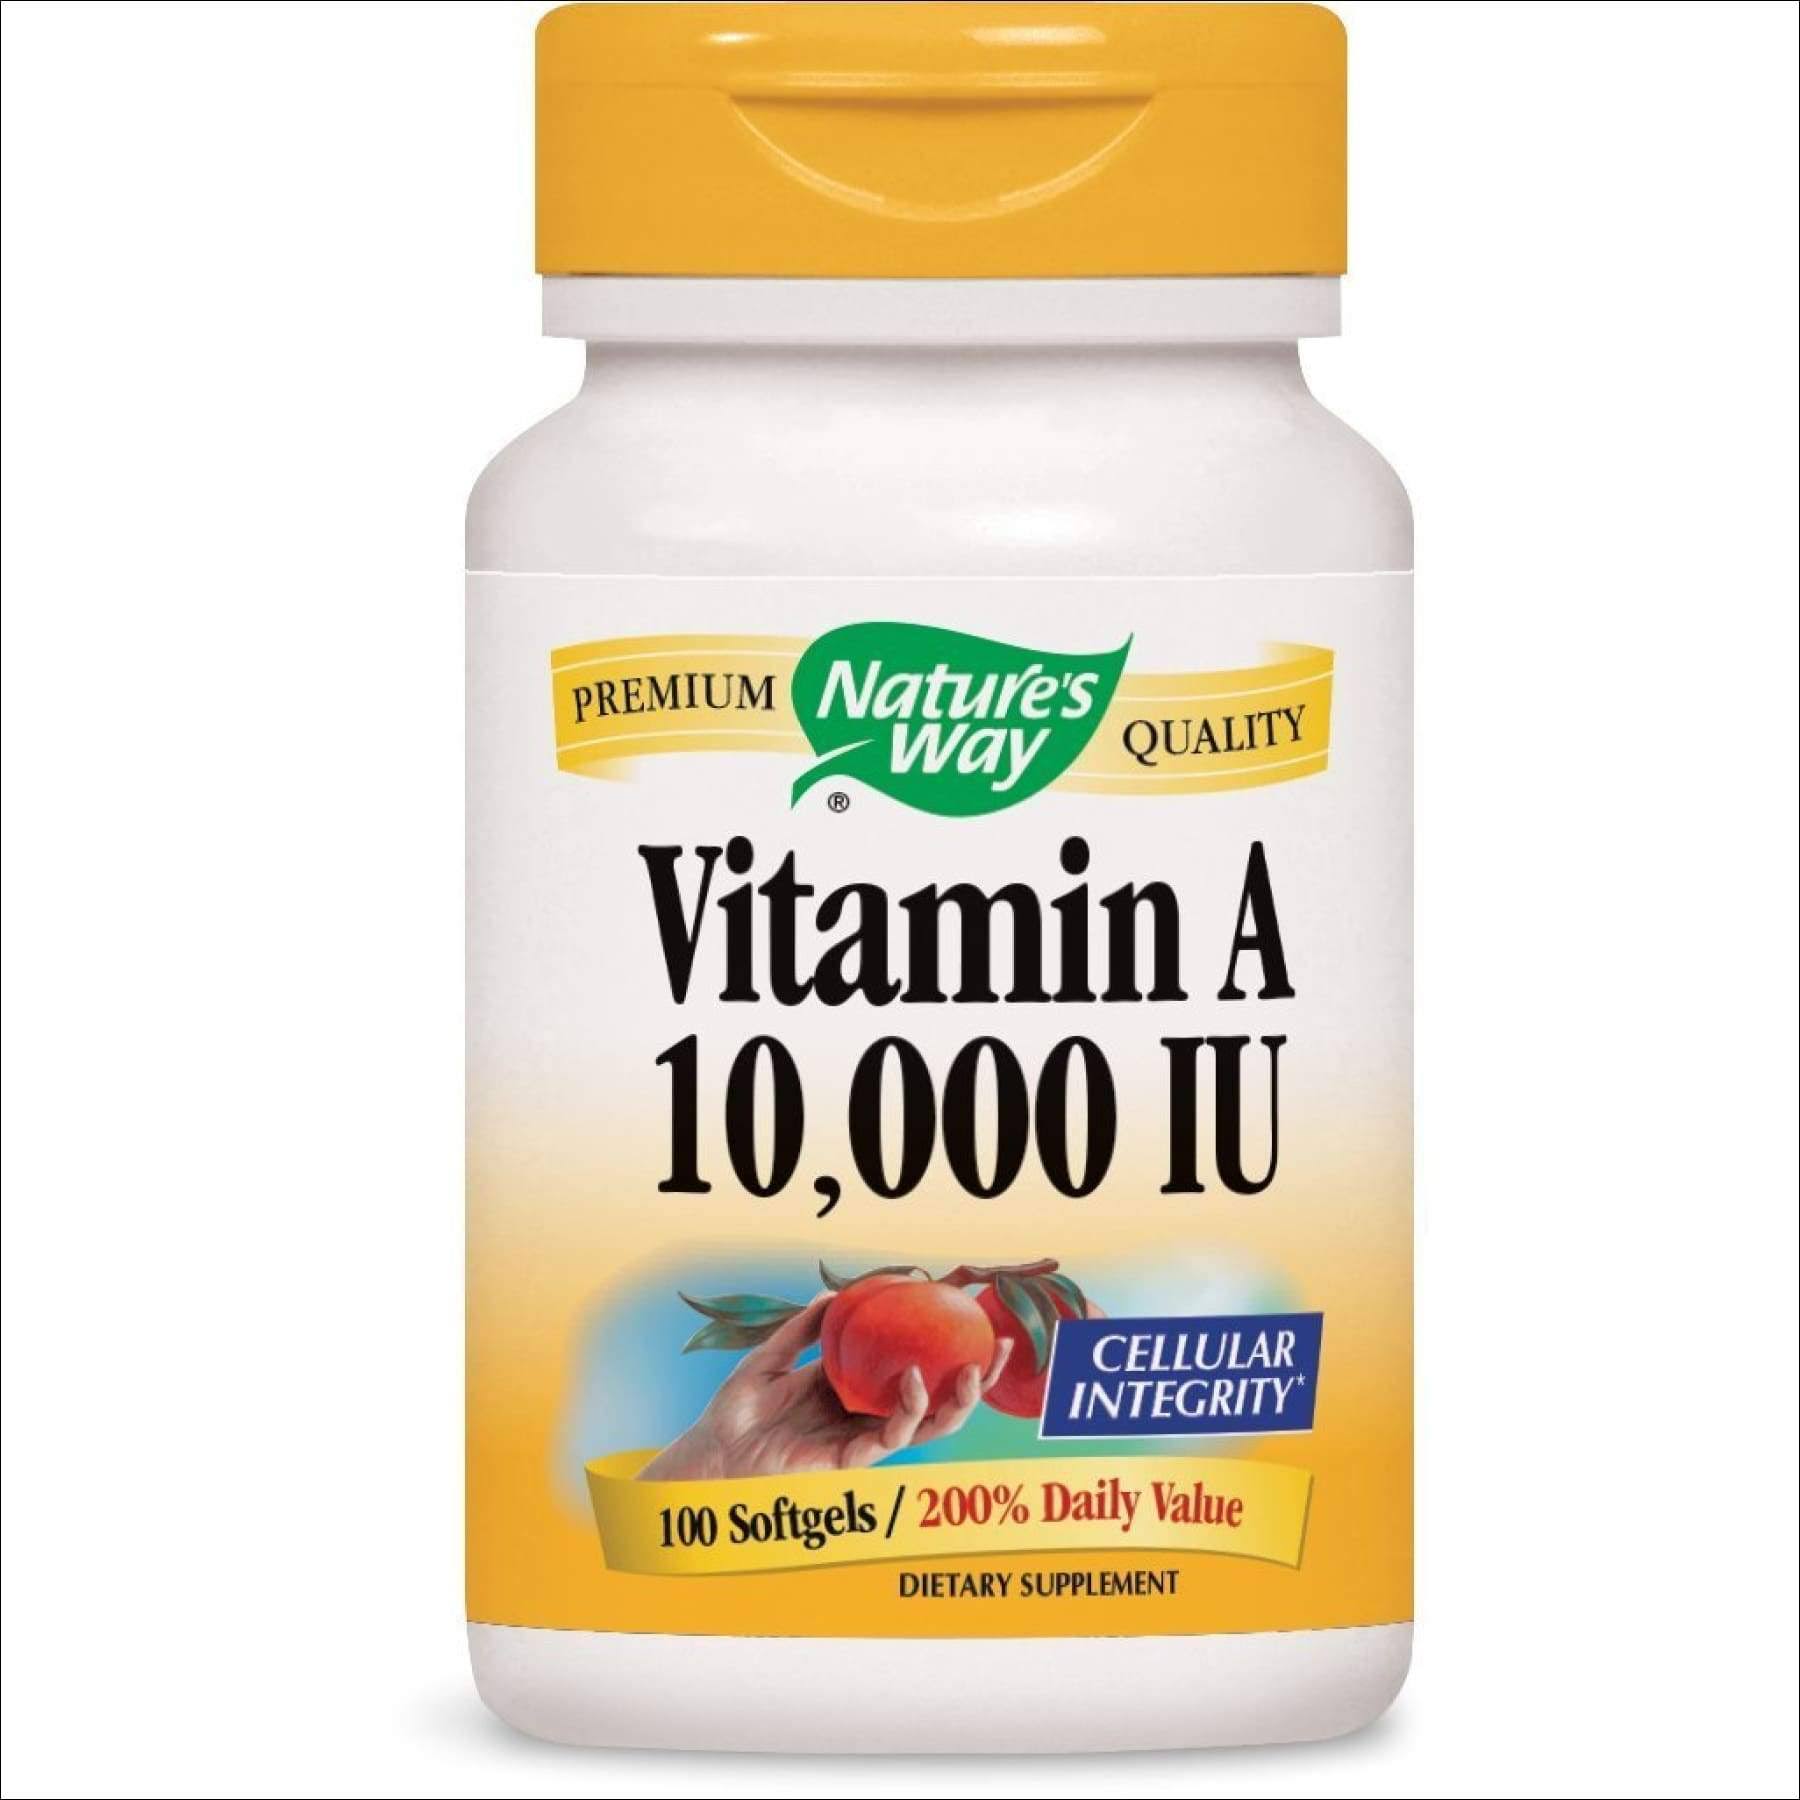 Nature's Way Vitamin A 10,000 IU Softgels - 100 Count, 2 Pack